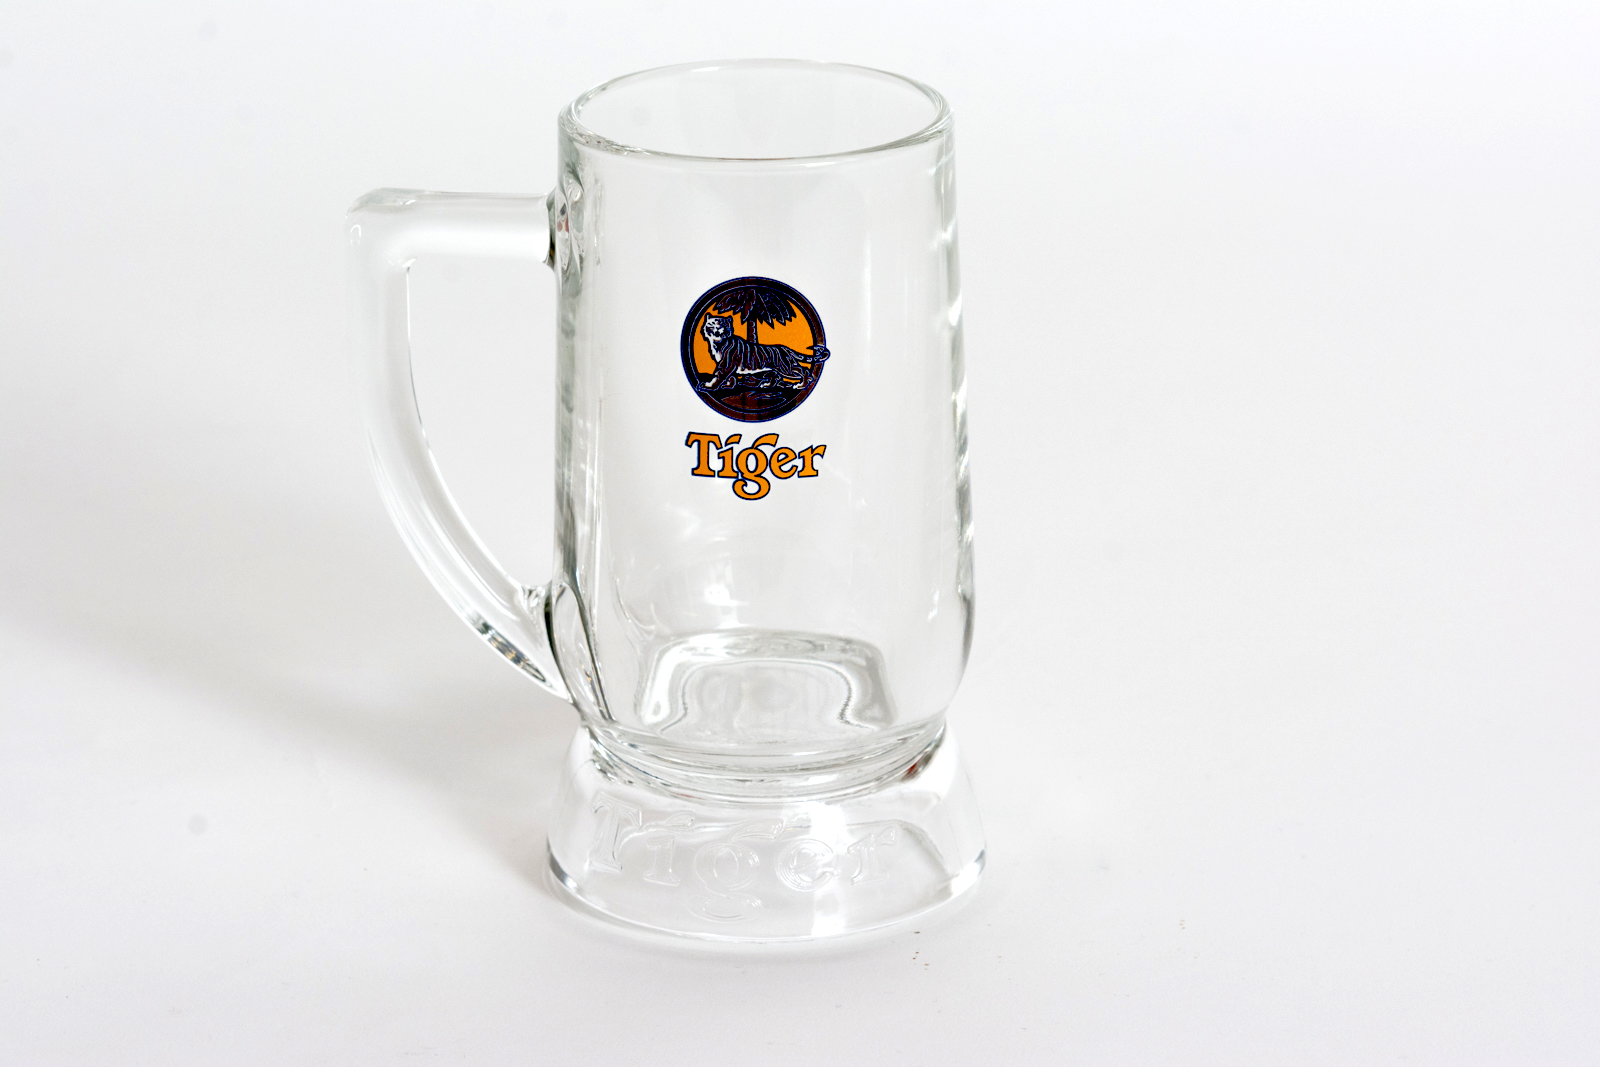 Tiger Trophy Mug Glassware (Set of 6)